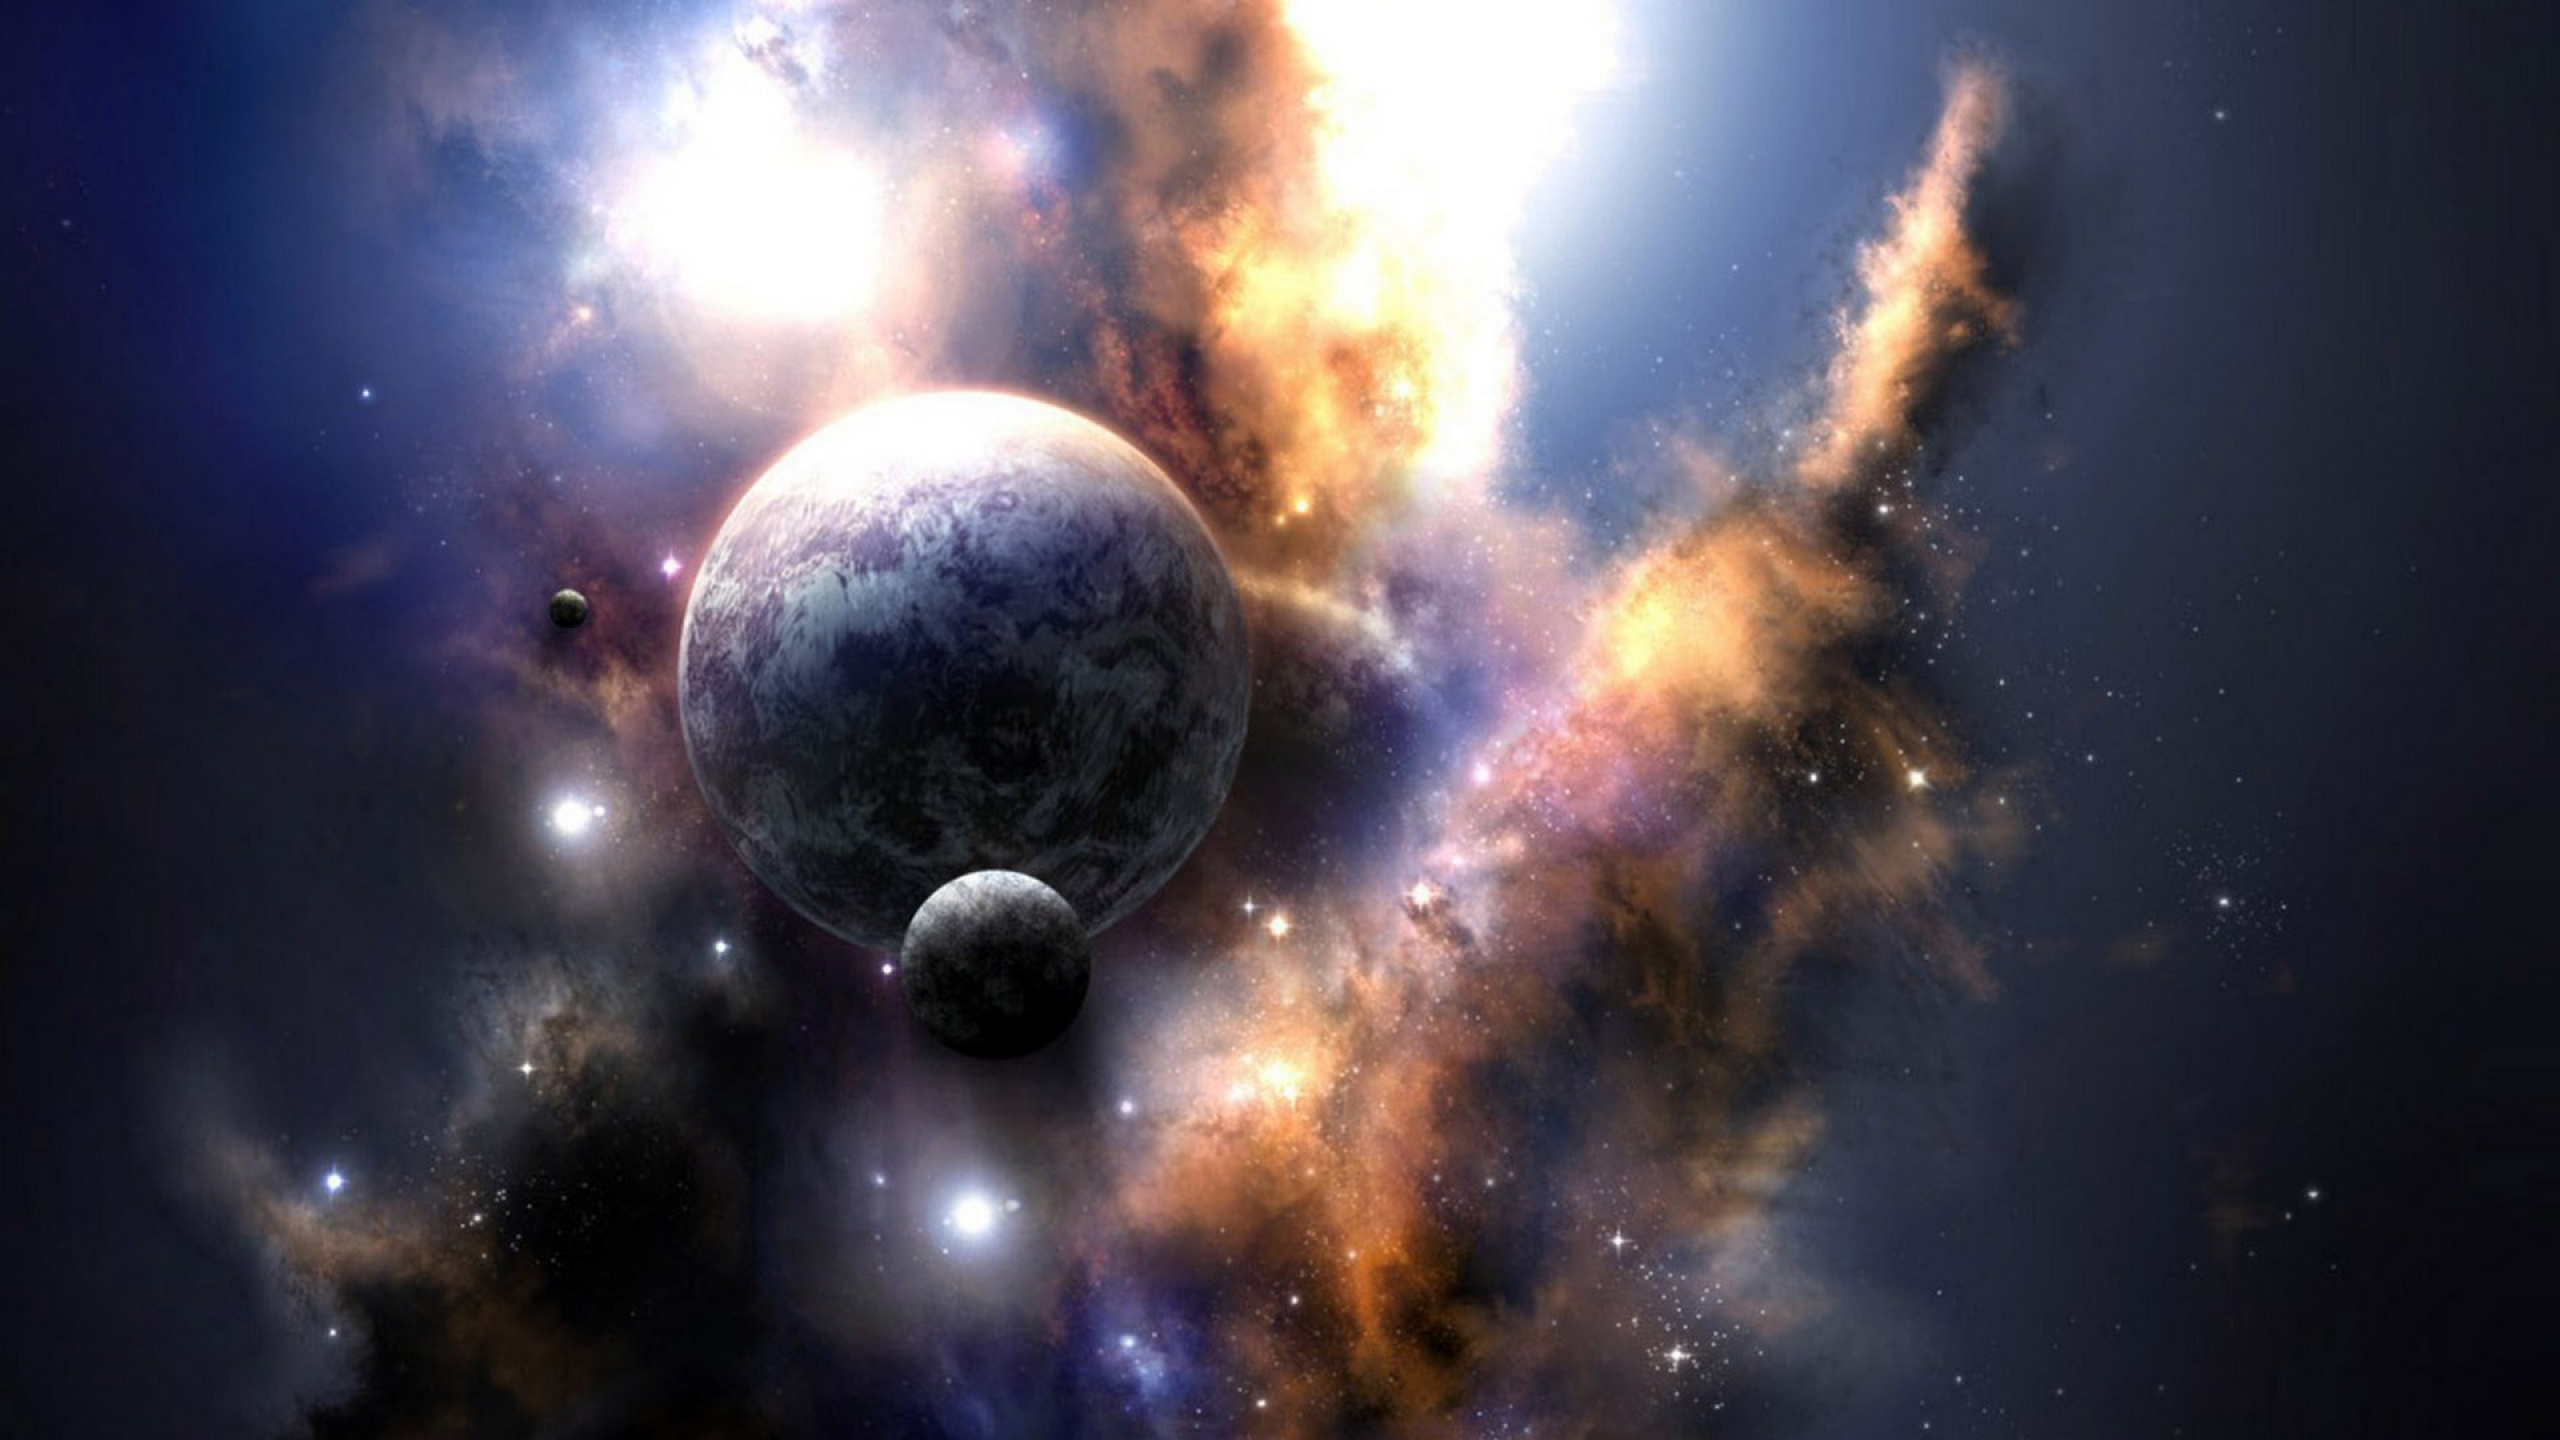 Universum, Weltraum, Astronomisches Objekt, Atmosphäre, Raum. Wallpaper in 2560x1440 Resolution